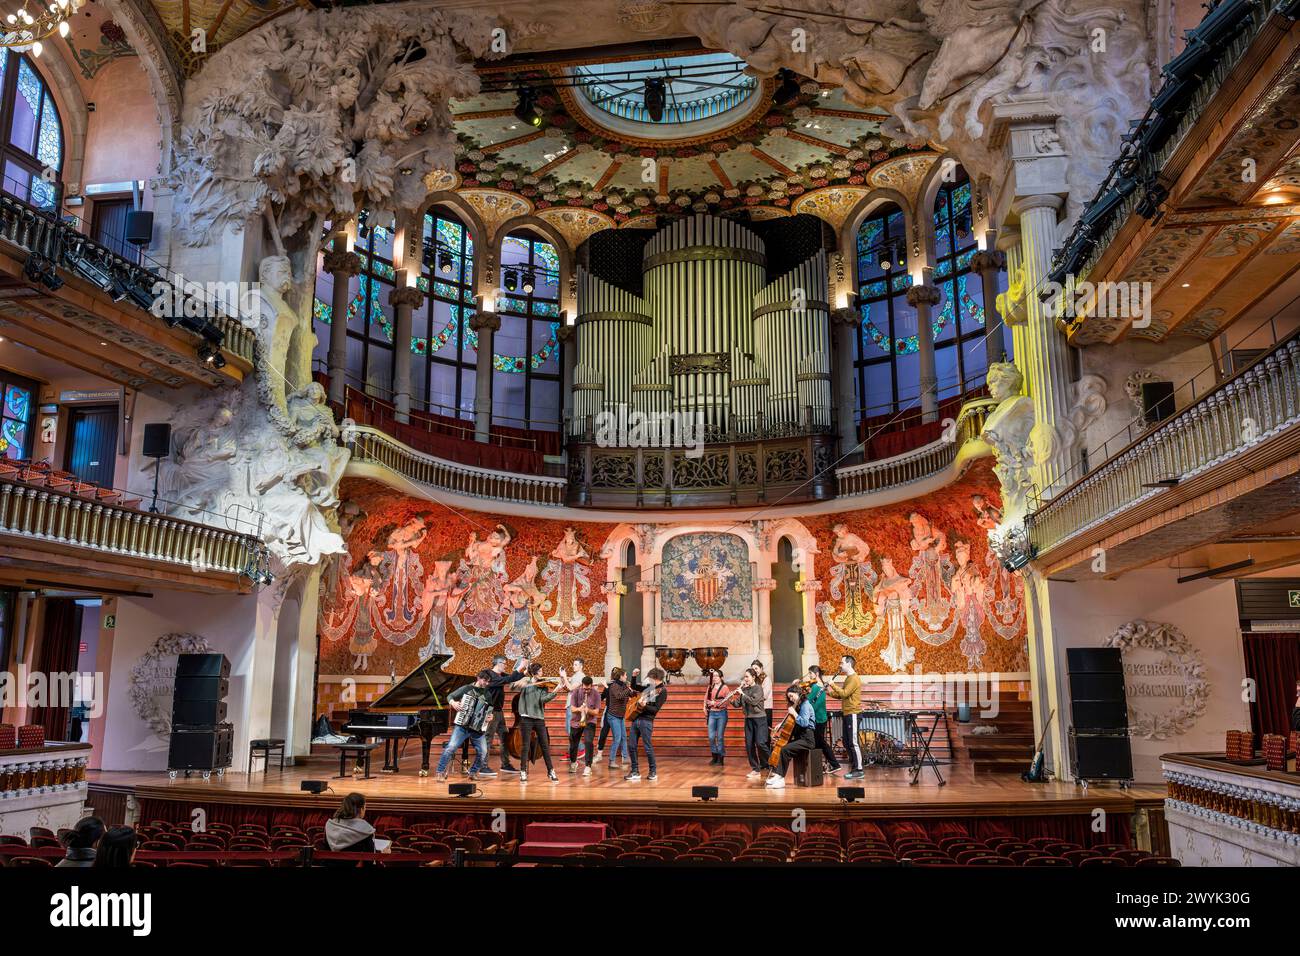 Spanien, Katalonien, Barcelona, Palau de la Musica Catalana (Katalanischer Musikpalast), Konzertsaal entworfen vom Architekten der katalanischen Moderne Lluis Domènech i Montaner, UNESCO-Weltkulturerbe Stockfoto